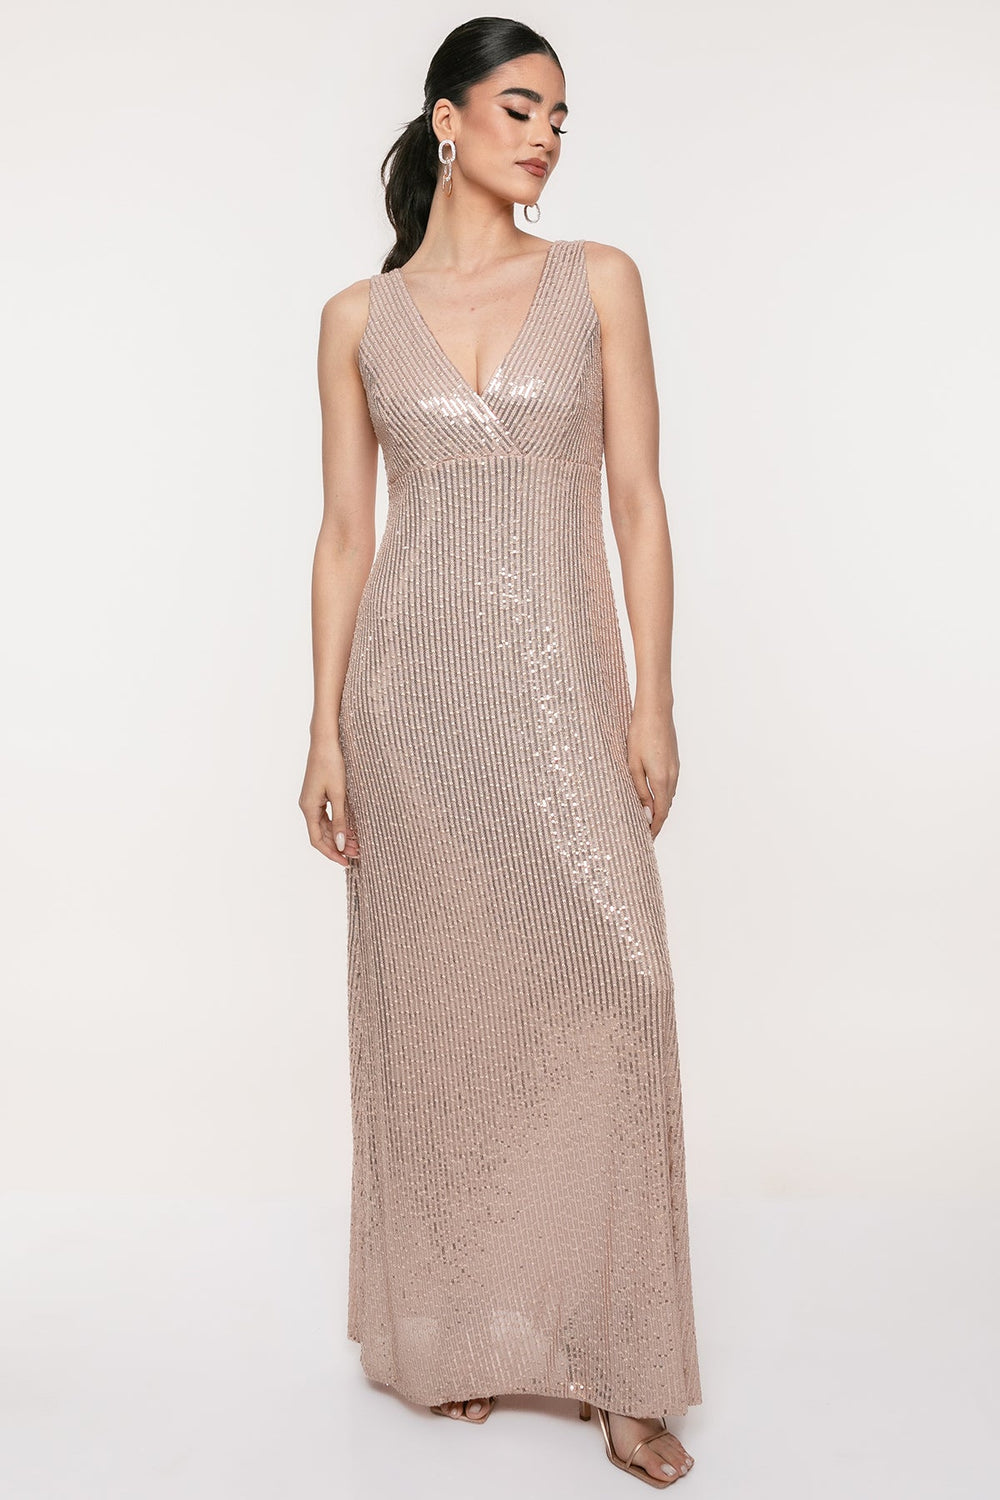 Φόρεμα μάξι παγιέτα με V λαιμόκοψη Coelia - A Collection Boutique